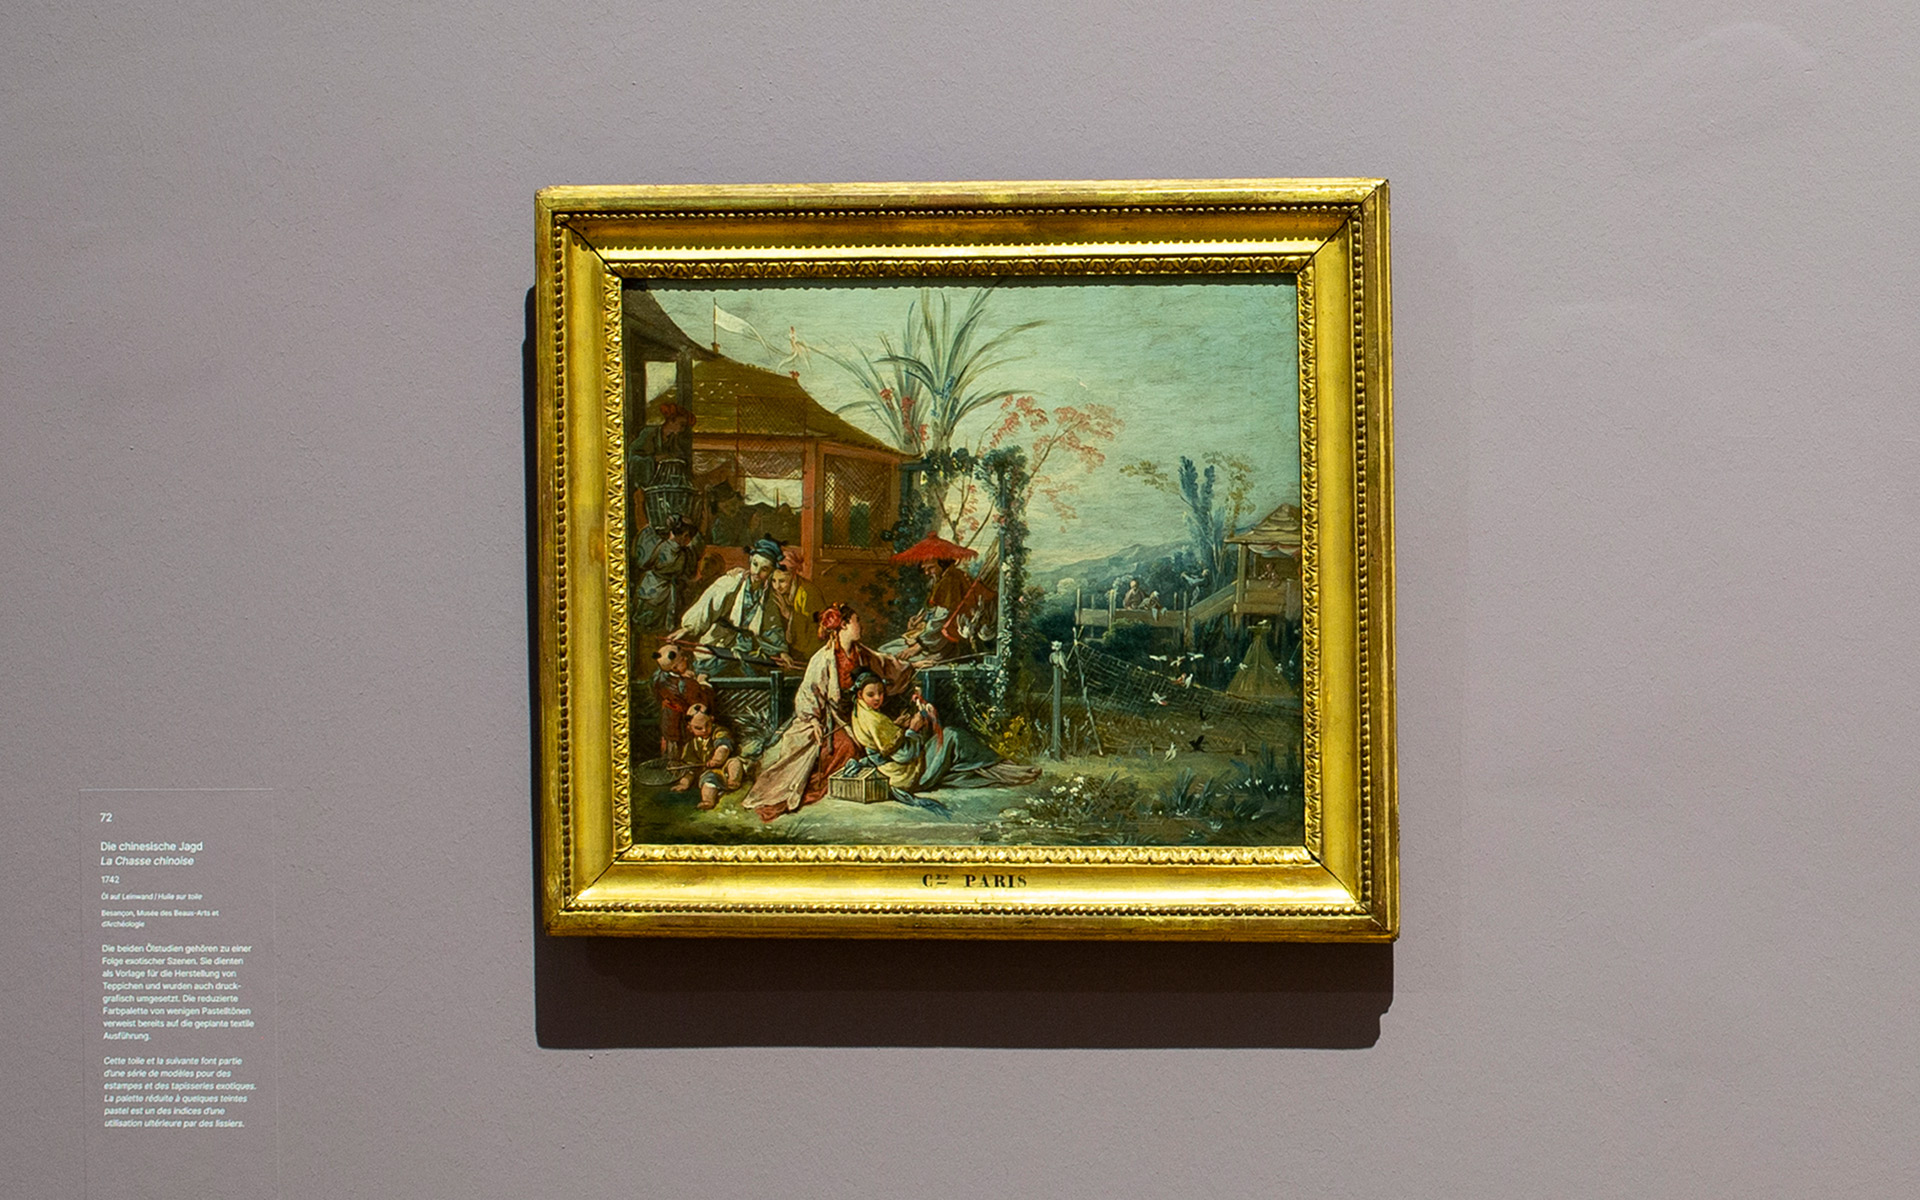 Ausstellungsansicht des Gemäldes Die chinesische Jagd von 1742 des Künstlers François Boucher